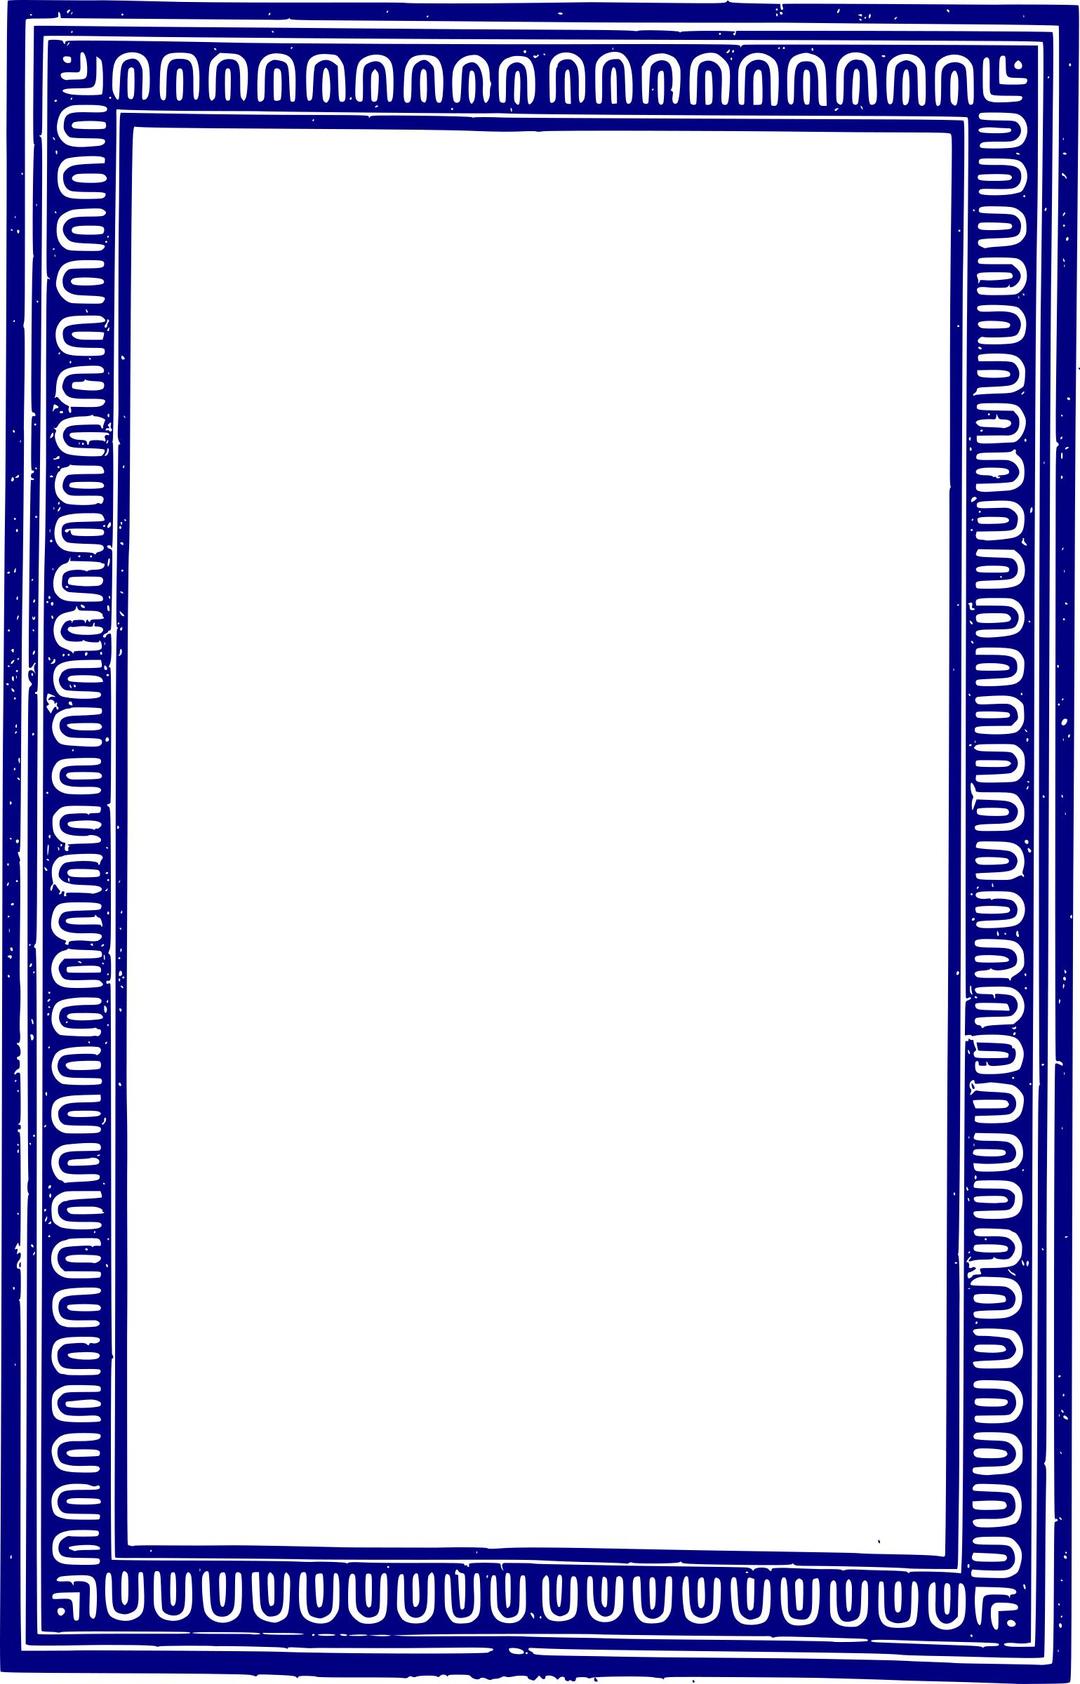 Solid Frame - Blue png transparent